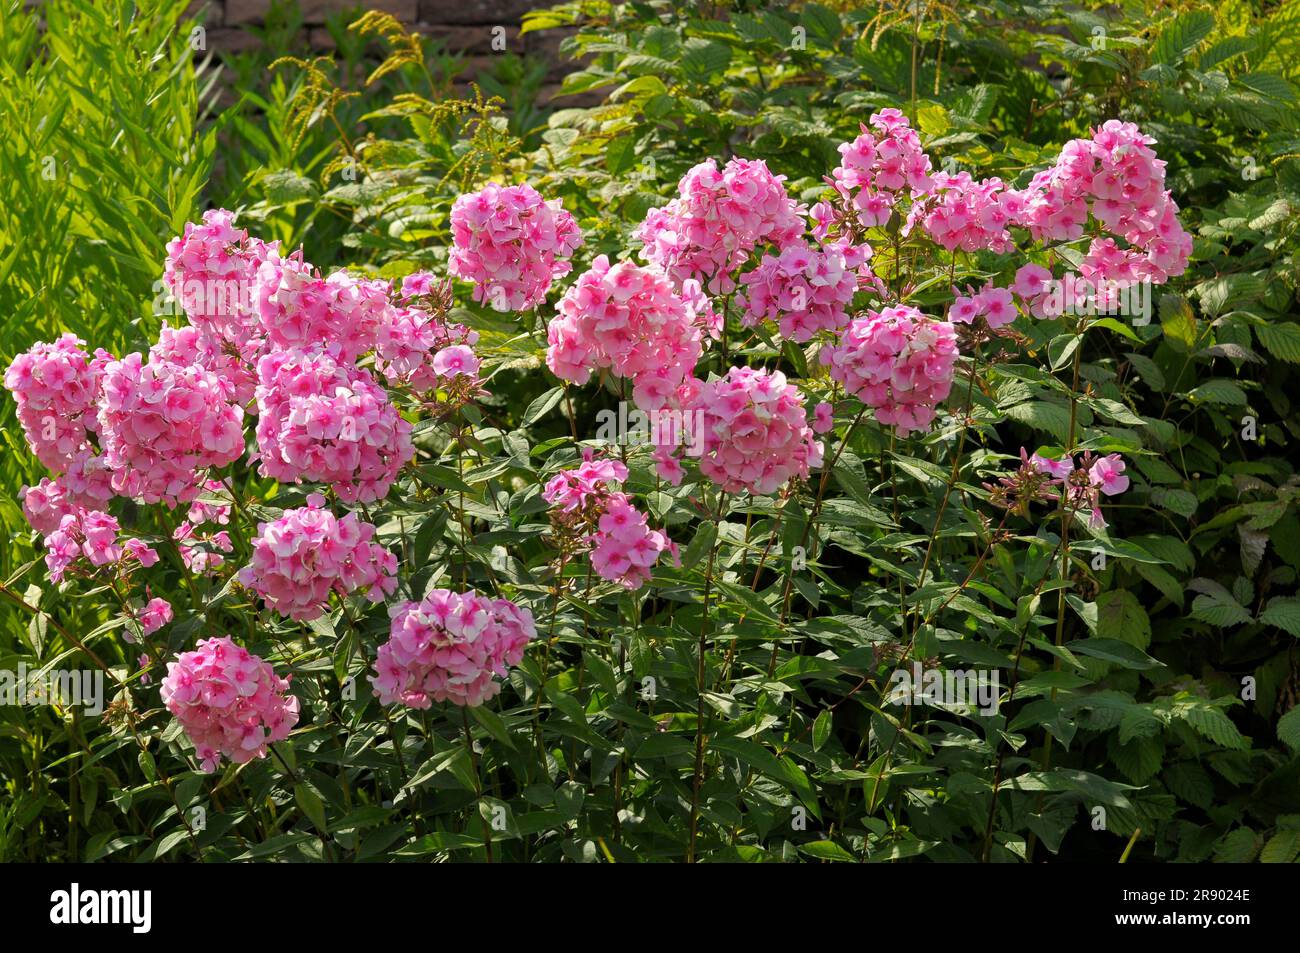 Stuttgart : Killesberg, perennial phlox flowering in the garden Stock Photo